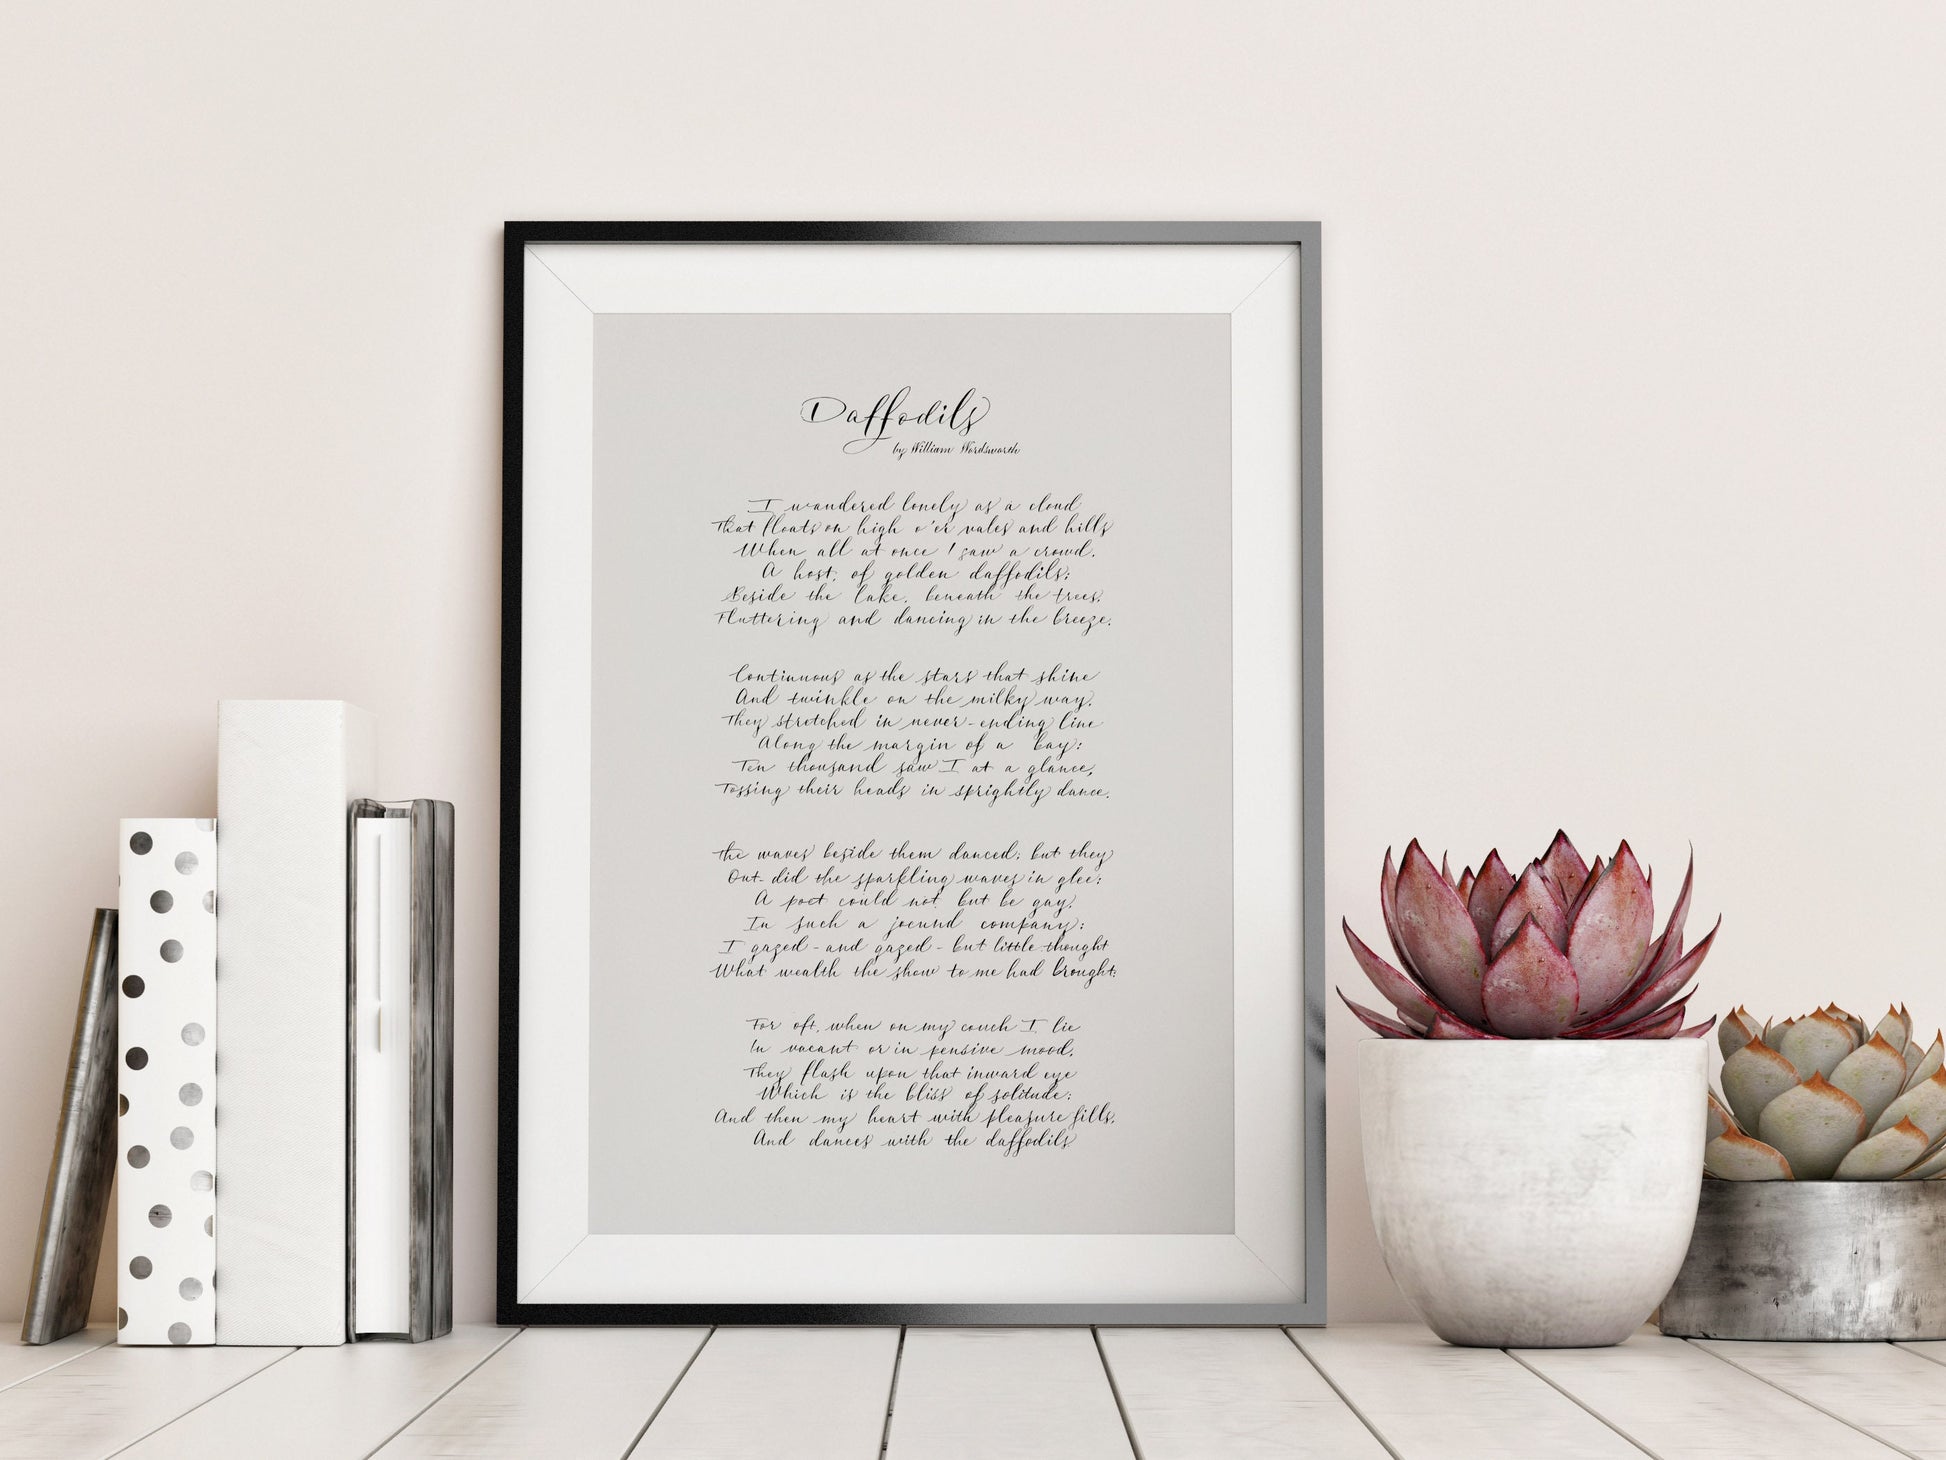 Daffodils poem by William Wordsworth Framed Print - Daffodils Calligraphy Print - Framed poster by William Wordsworth